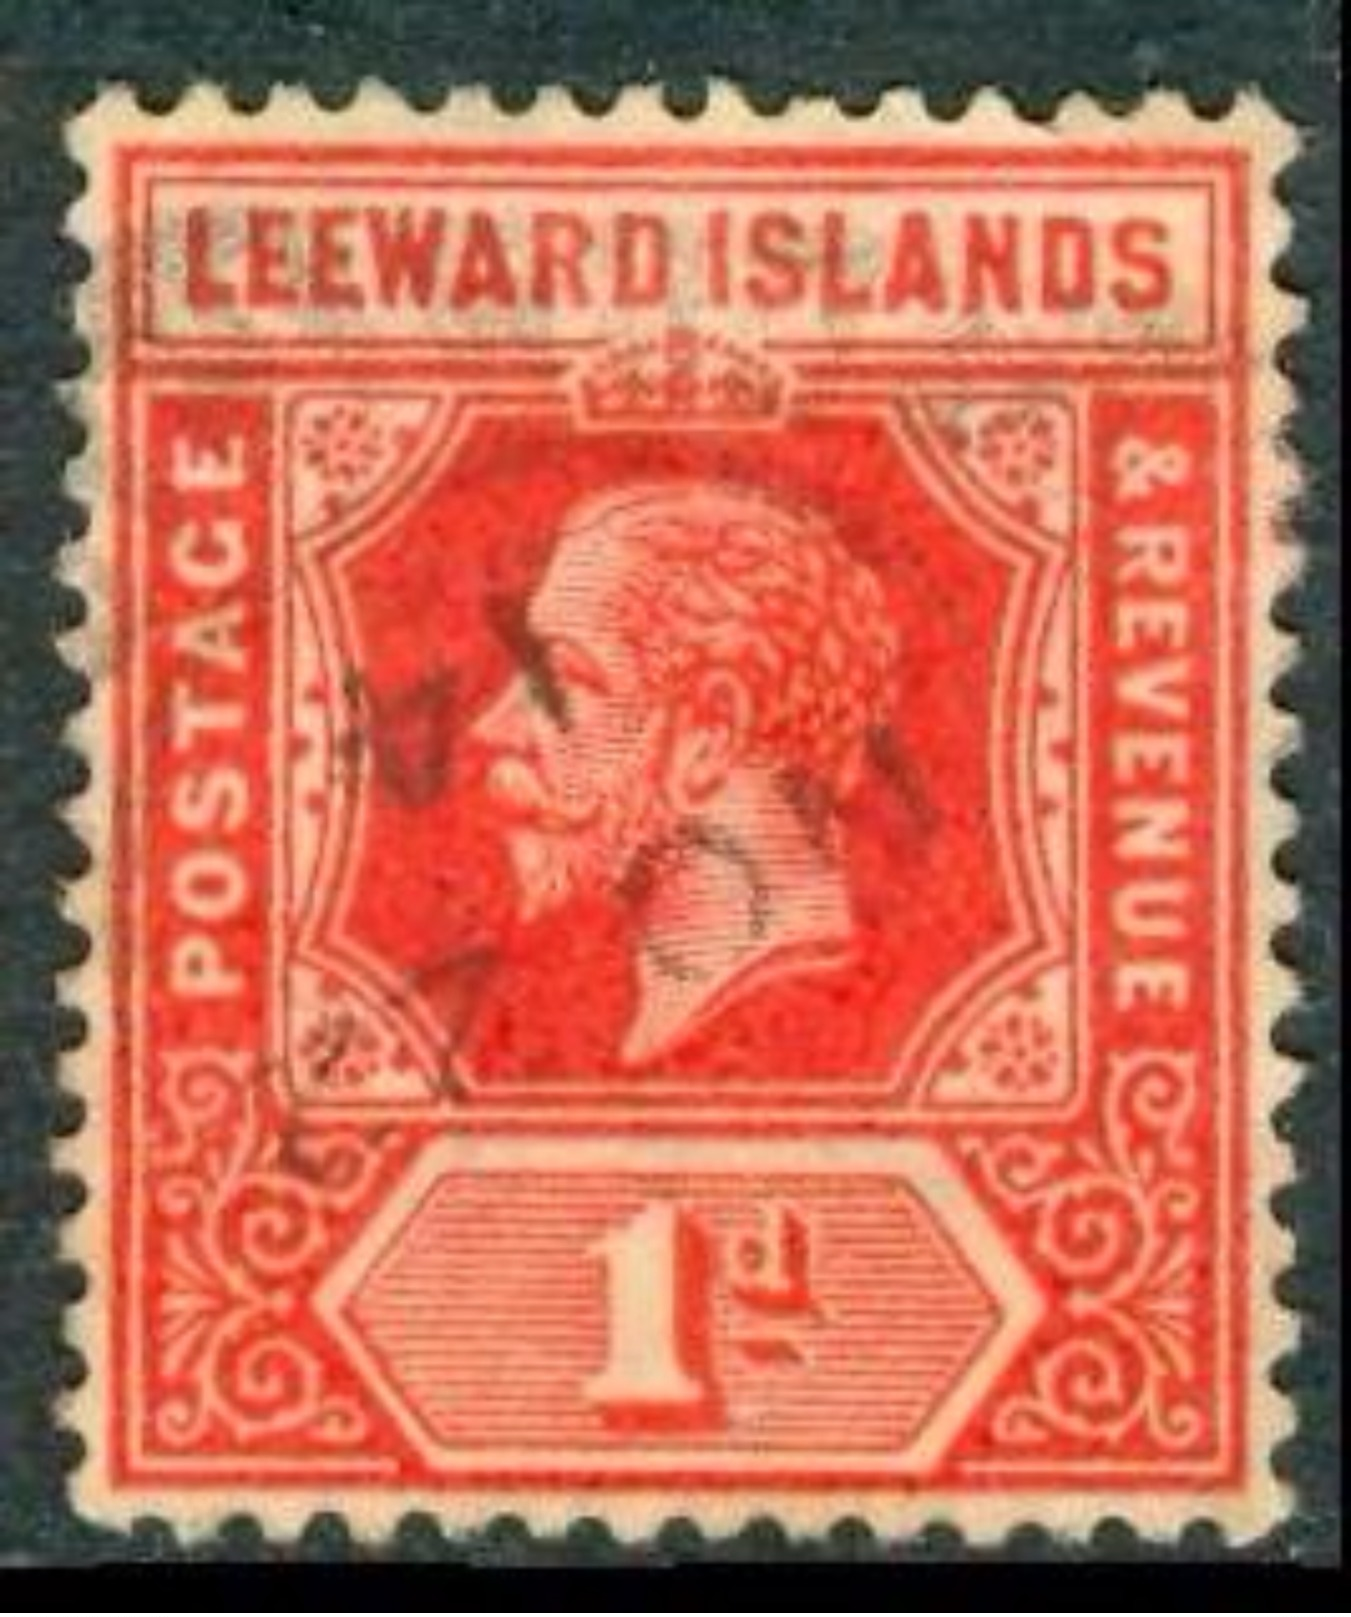 LEEWARD ISL. 1915 KGV 1d. Bright Scarlet, Wmk Mult Crown CA, VF Used, MiNr 48b, SG 48a - Asia (Other)